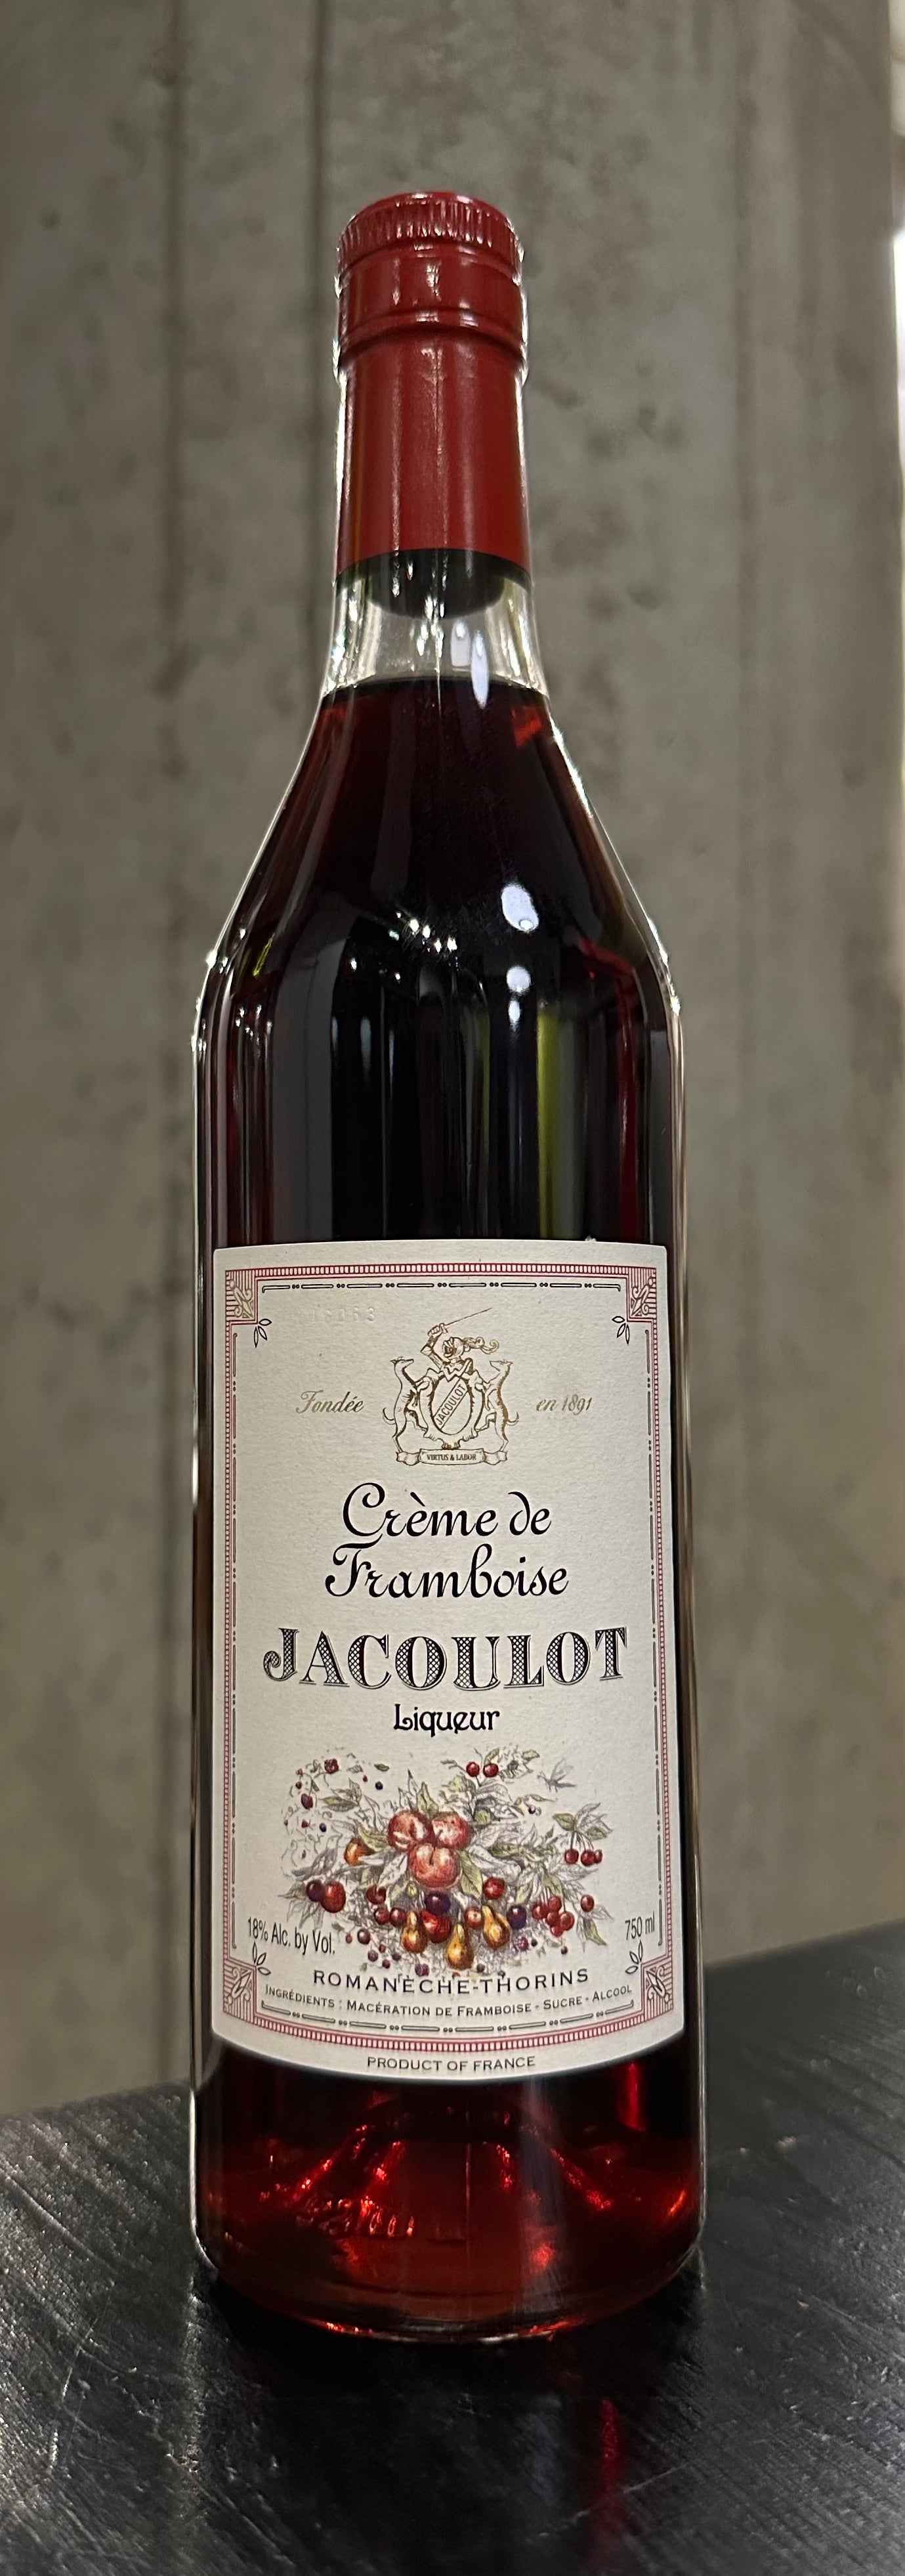 Jacoulot Crème de Framboise (Raspberry)